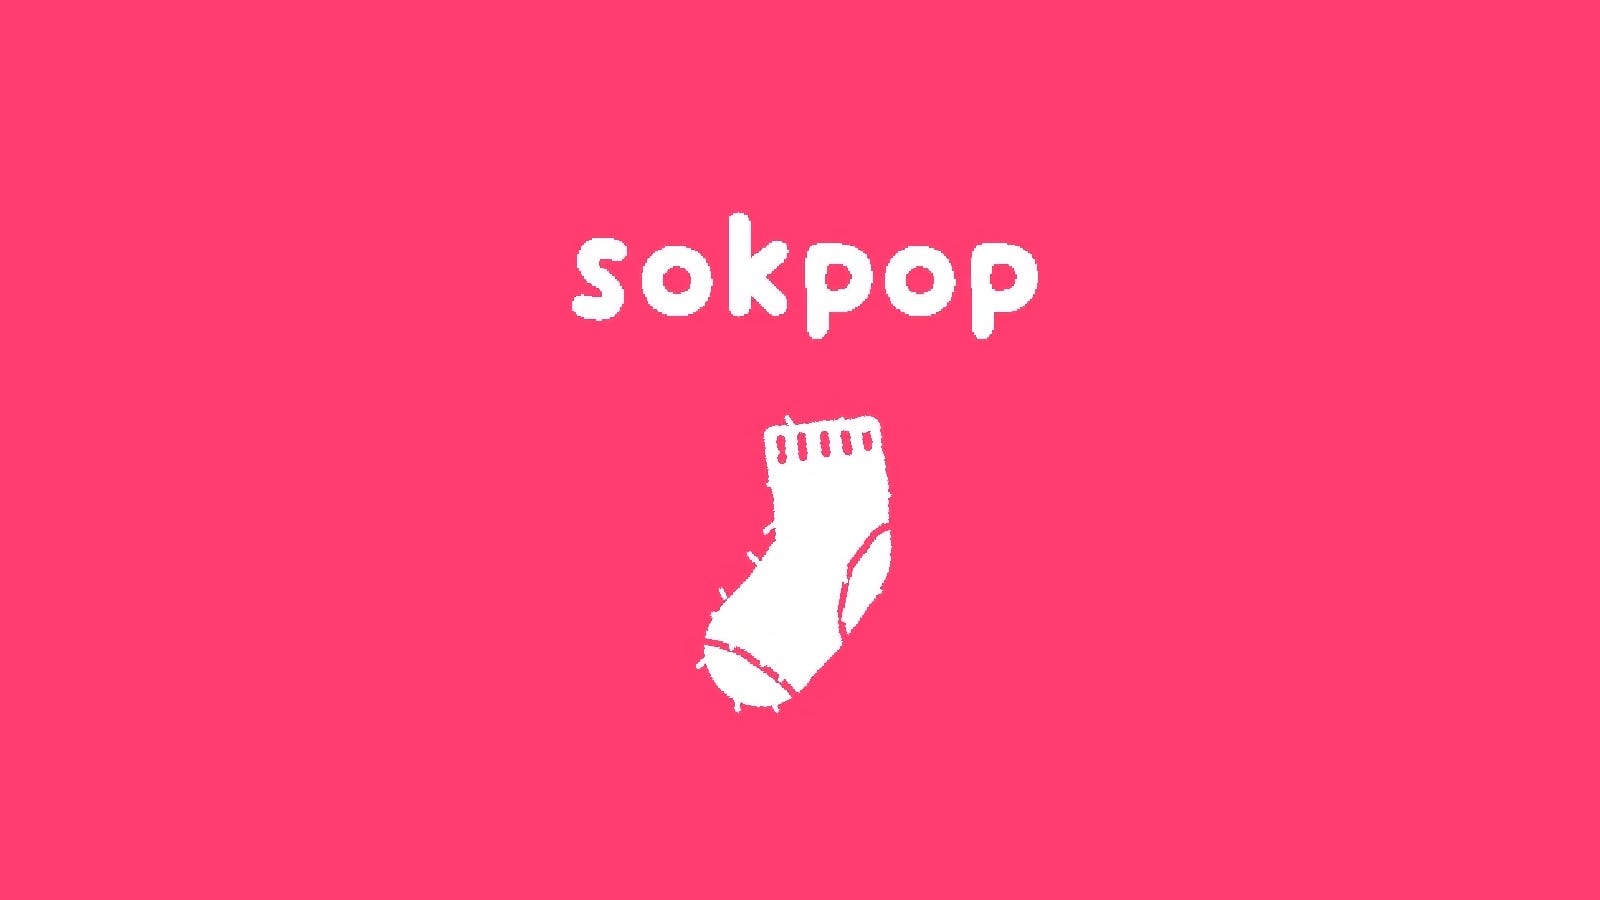 Tập thể Sokpop là niềm vui nhất mà bạn có thể có chỉ với $3 một tháng